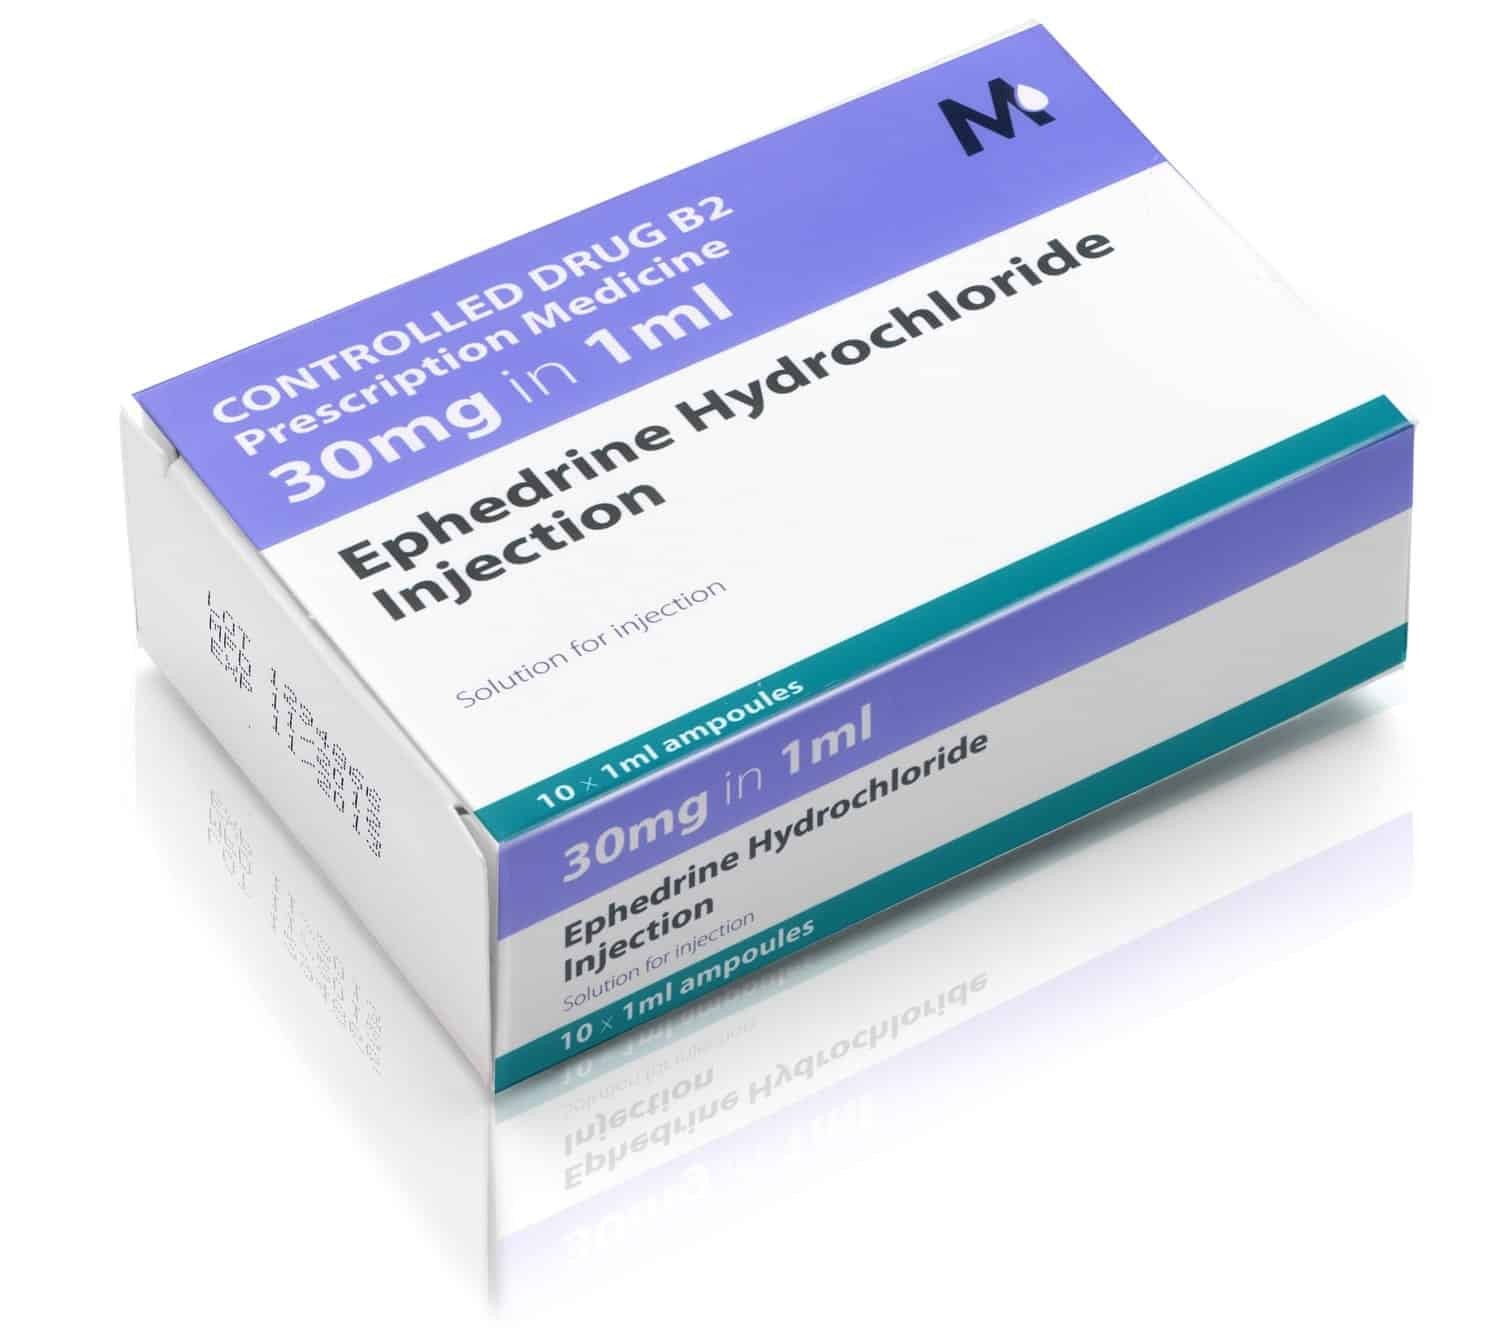 Thuốc Ephedrine có thể được chỉ định trong điều trị huyết áp thấp